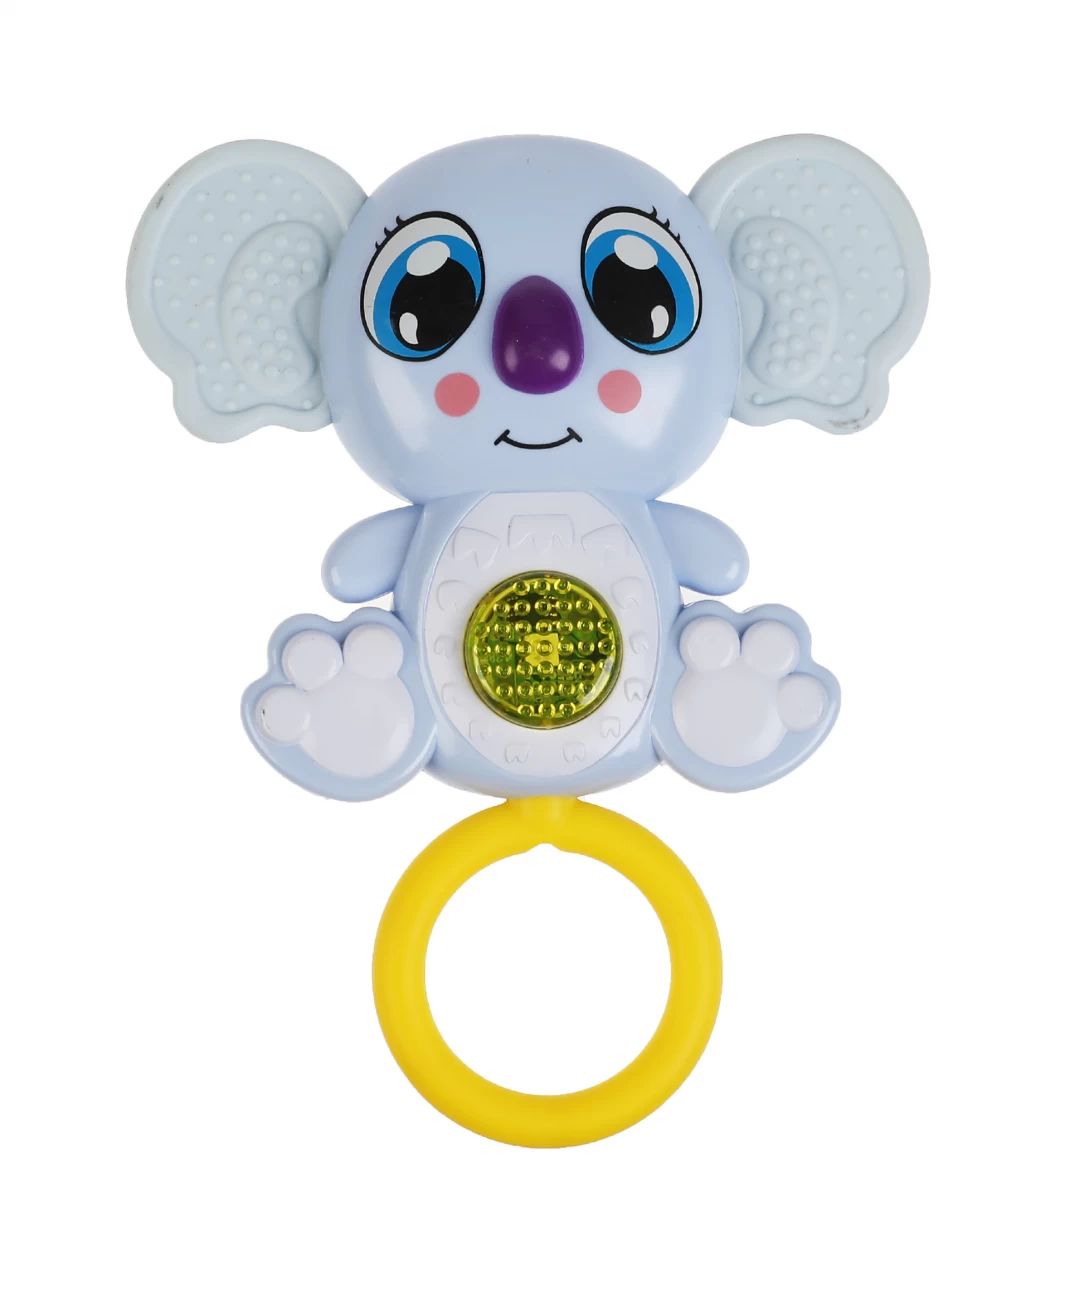 Развивающая игрушка Умка Музыкальная коала 319258 развивающая музыкальная игрушка умка сказочный патруль смартфончик со светом